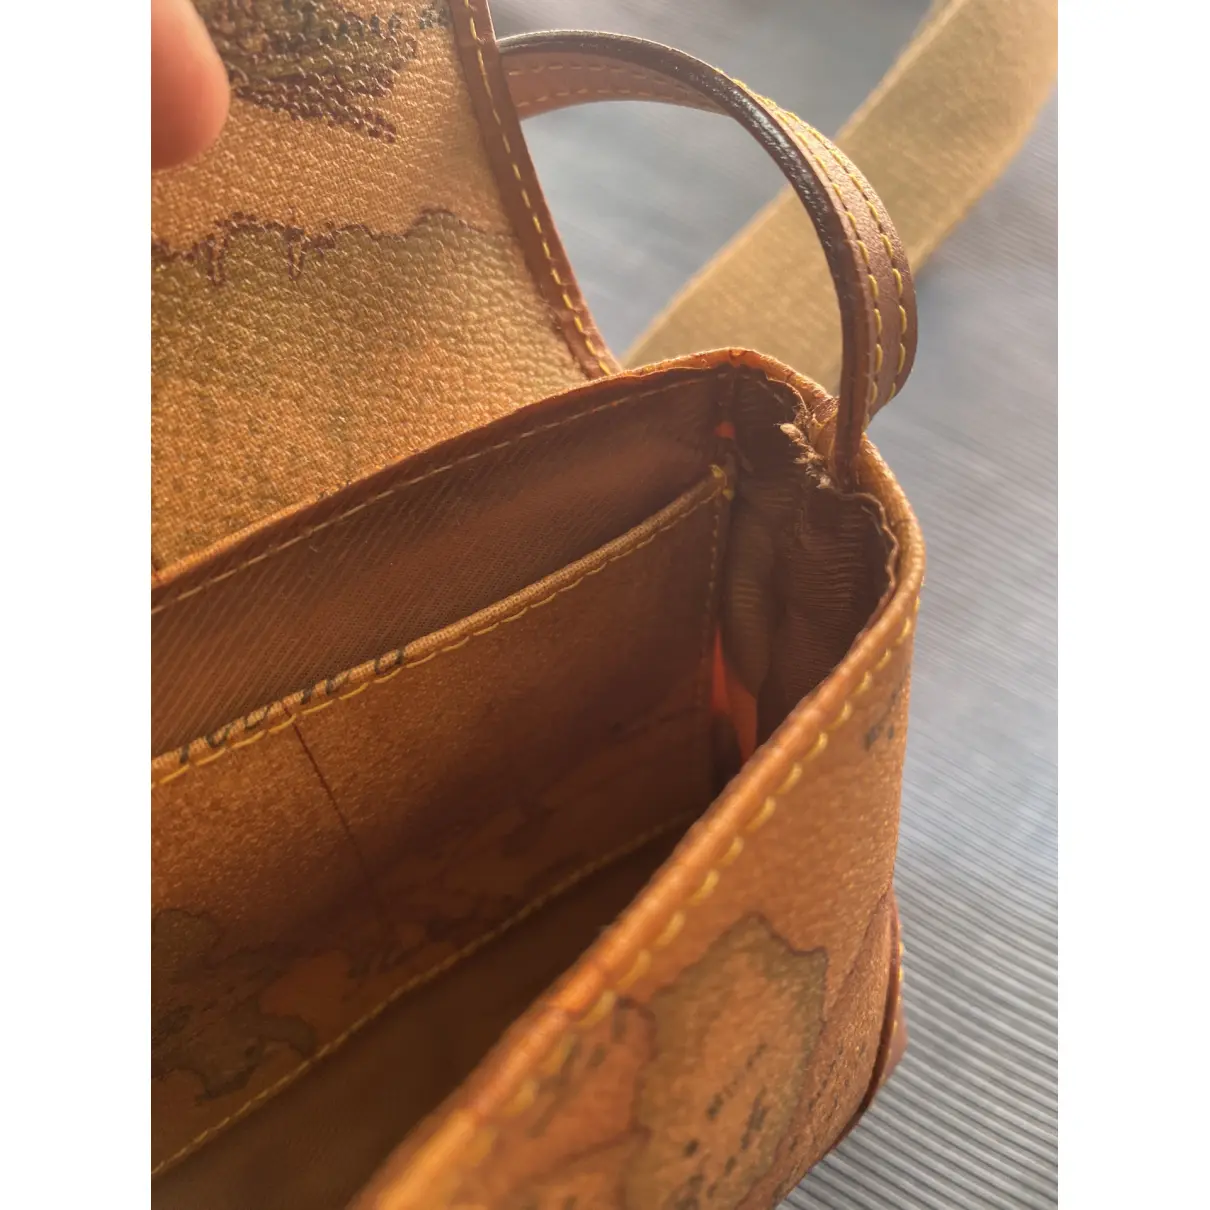 Leather clutch bag Prima classe